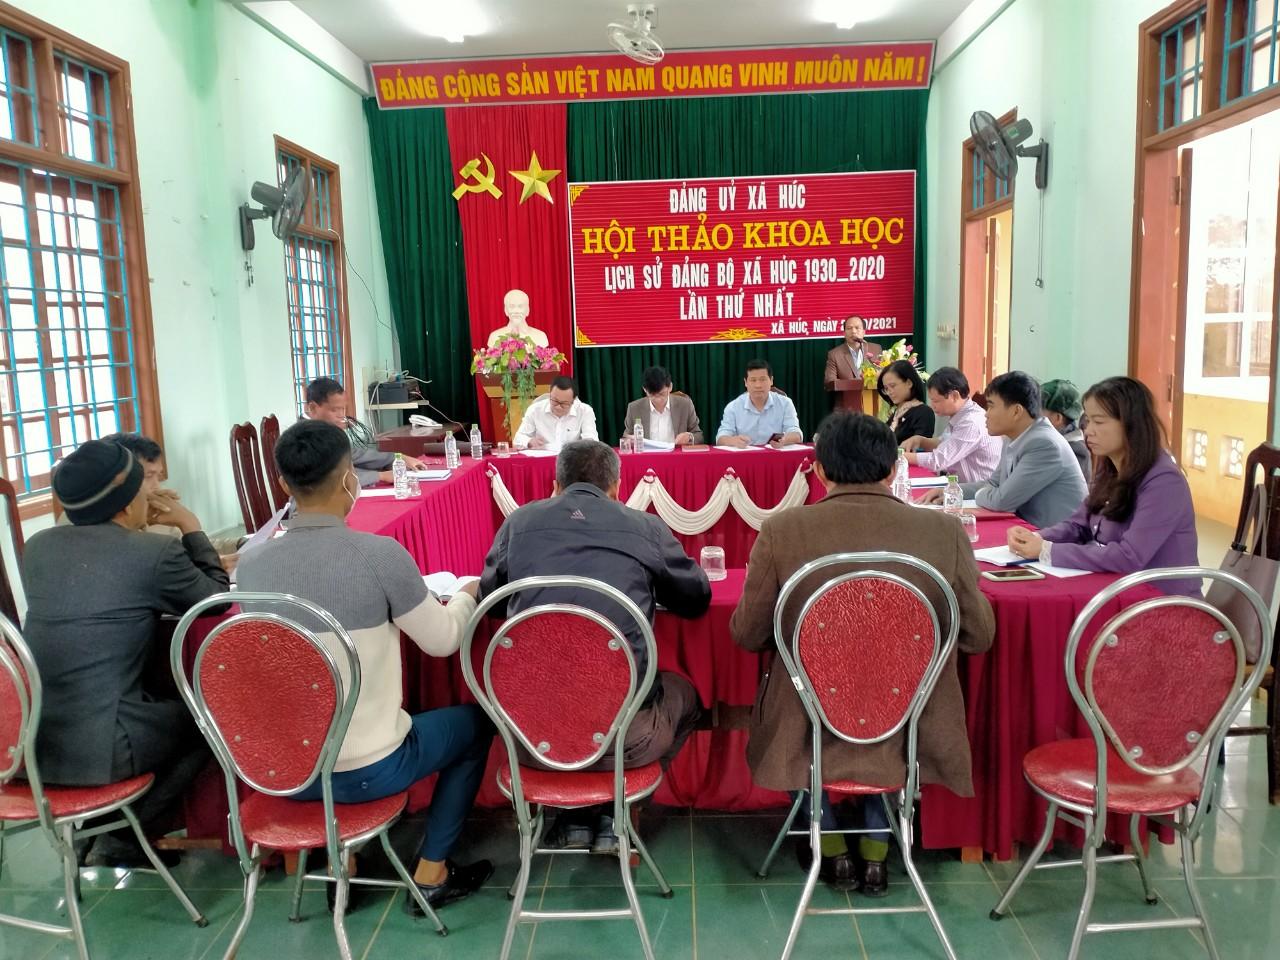 Đảng ủy xã tổ chức Hội thảo khoa học biện soạn lịch sử Đảng bộ xã Húc